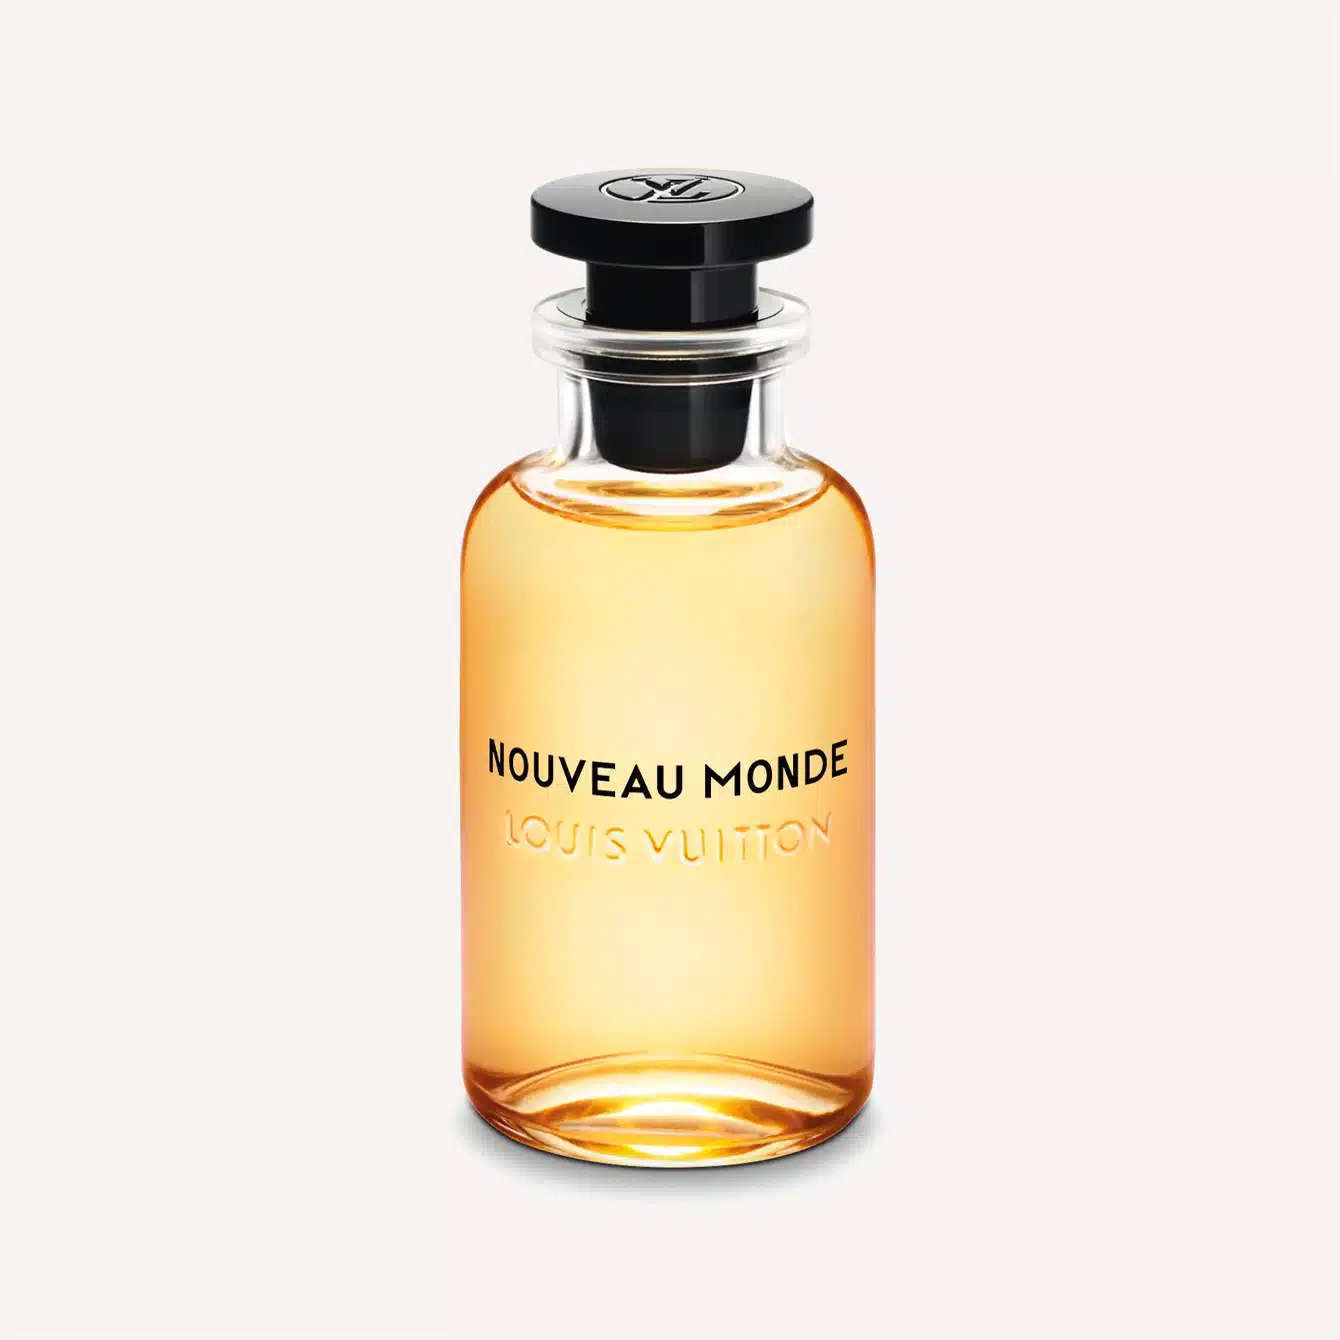 Louis Vuitton Nouveau Monde Eau de Parfum